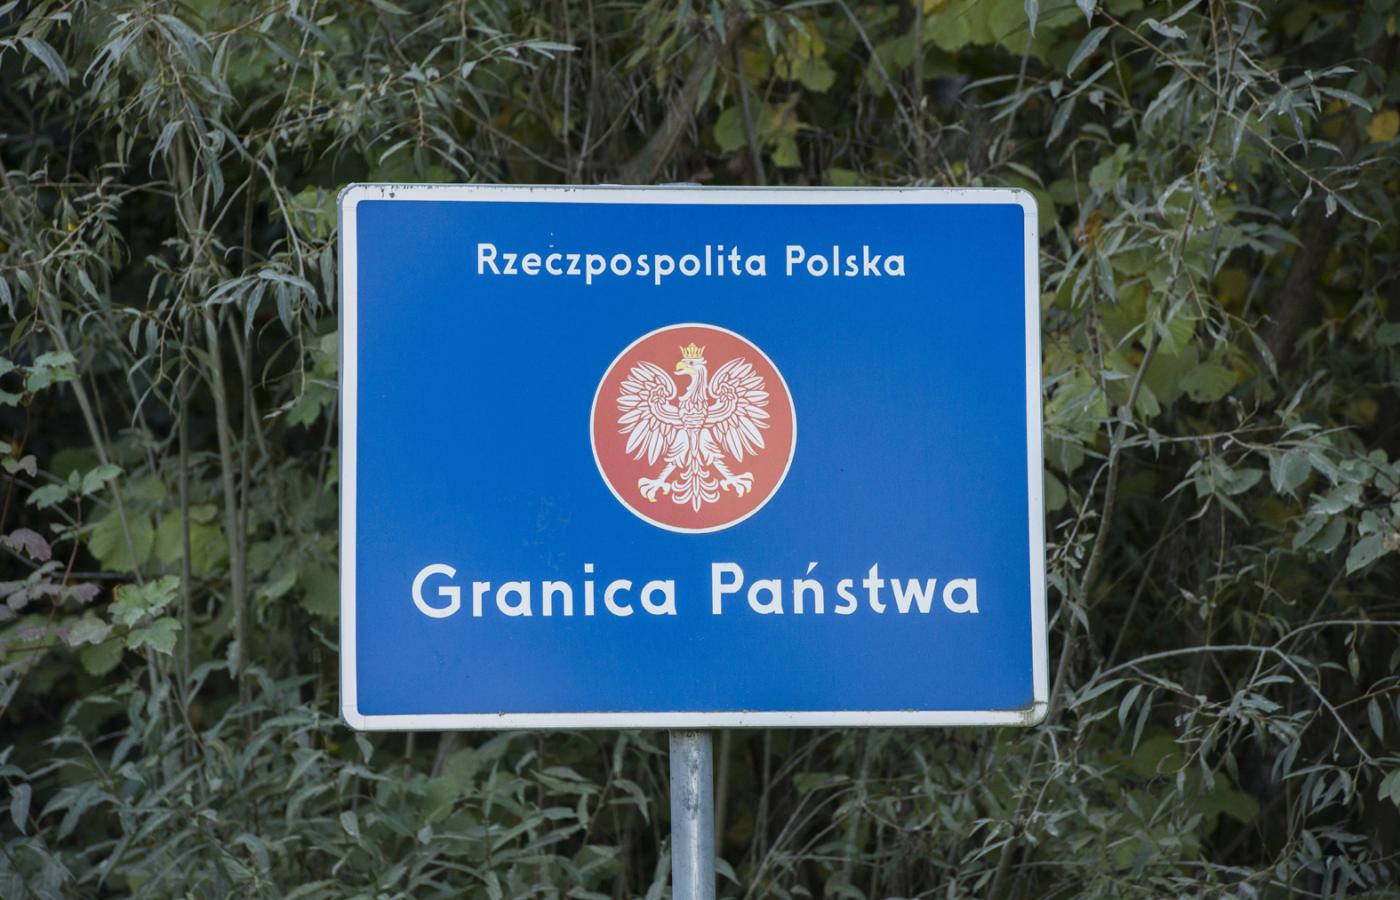 Od 2014 r. zanotowano wzrost o ponad 150 tys. osób posiadających ważne dokumenty uprawniające do pobytu w Polsce.